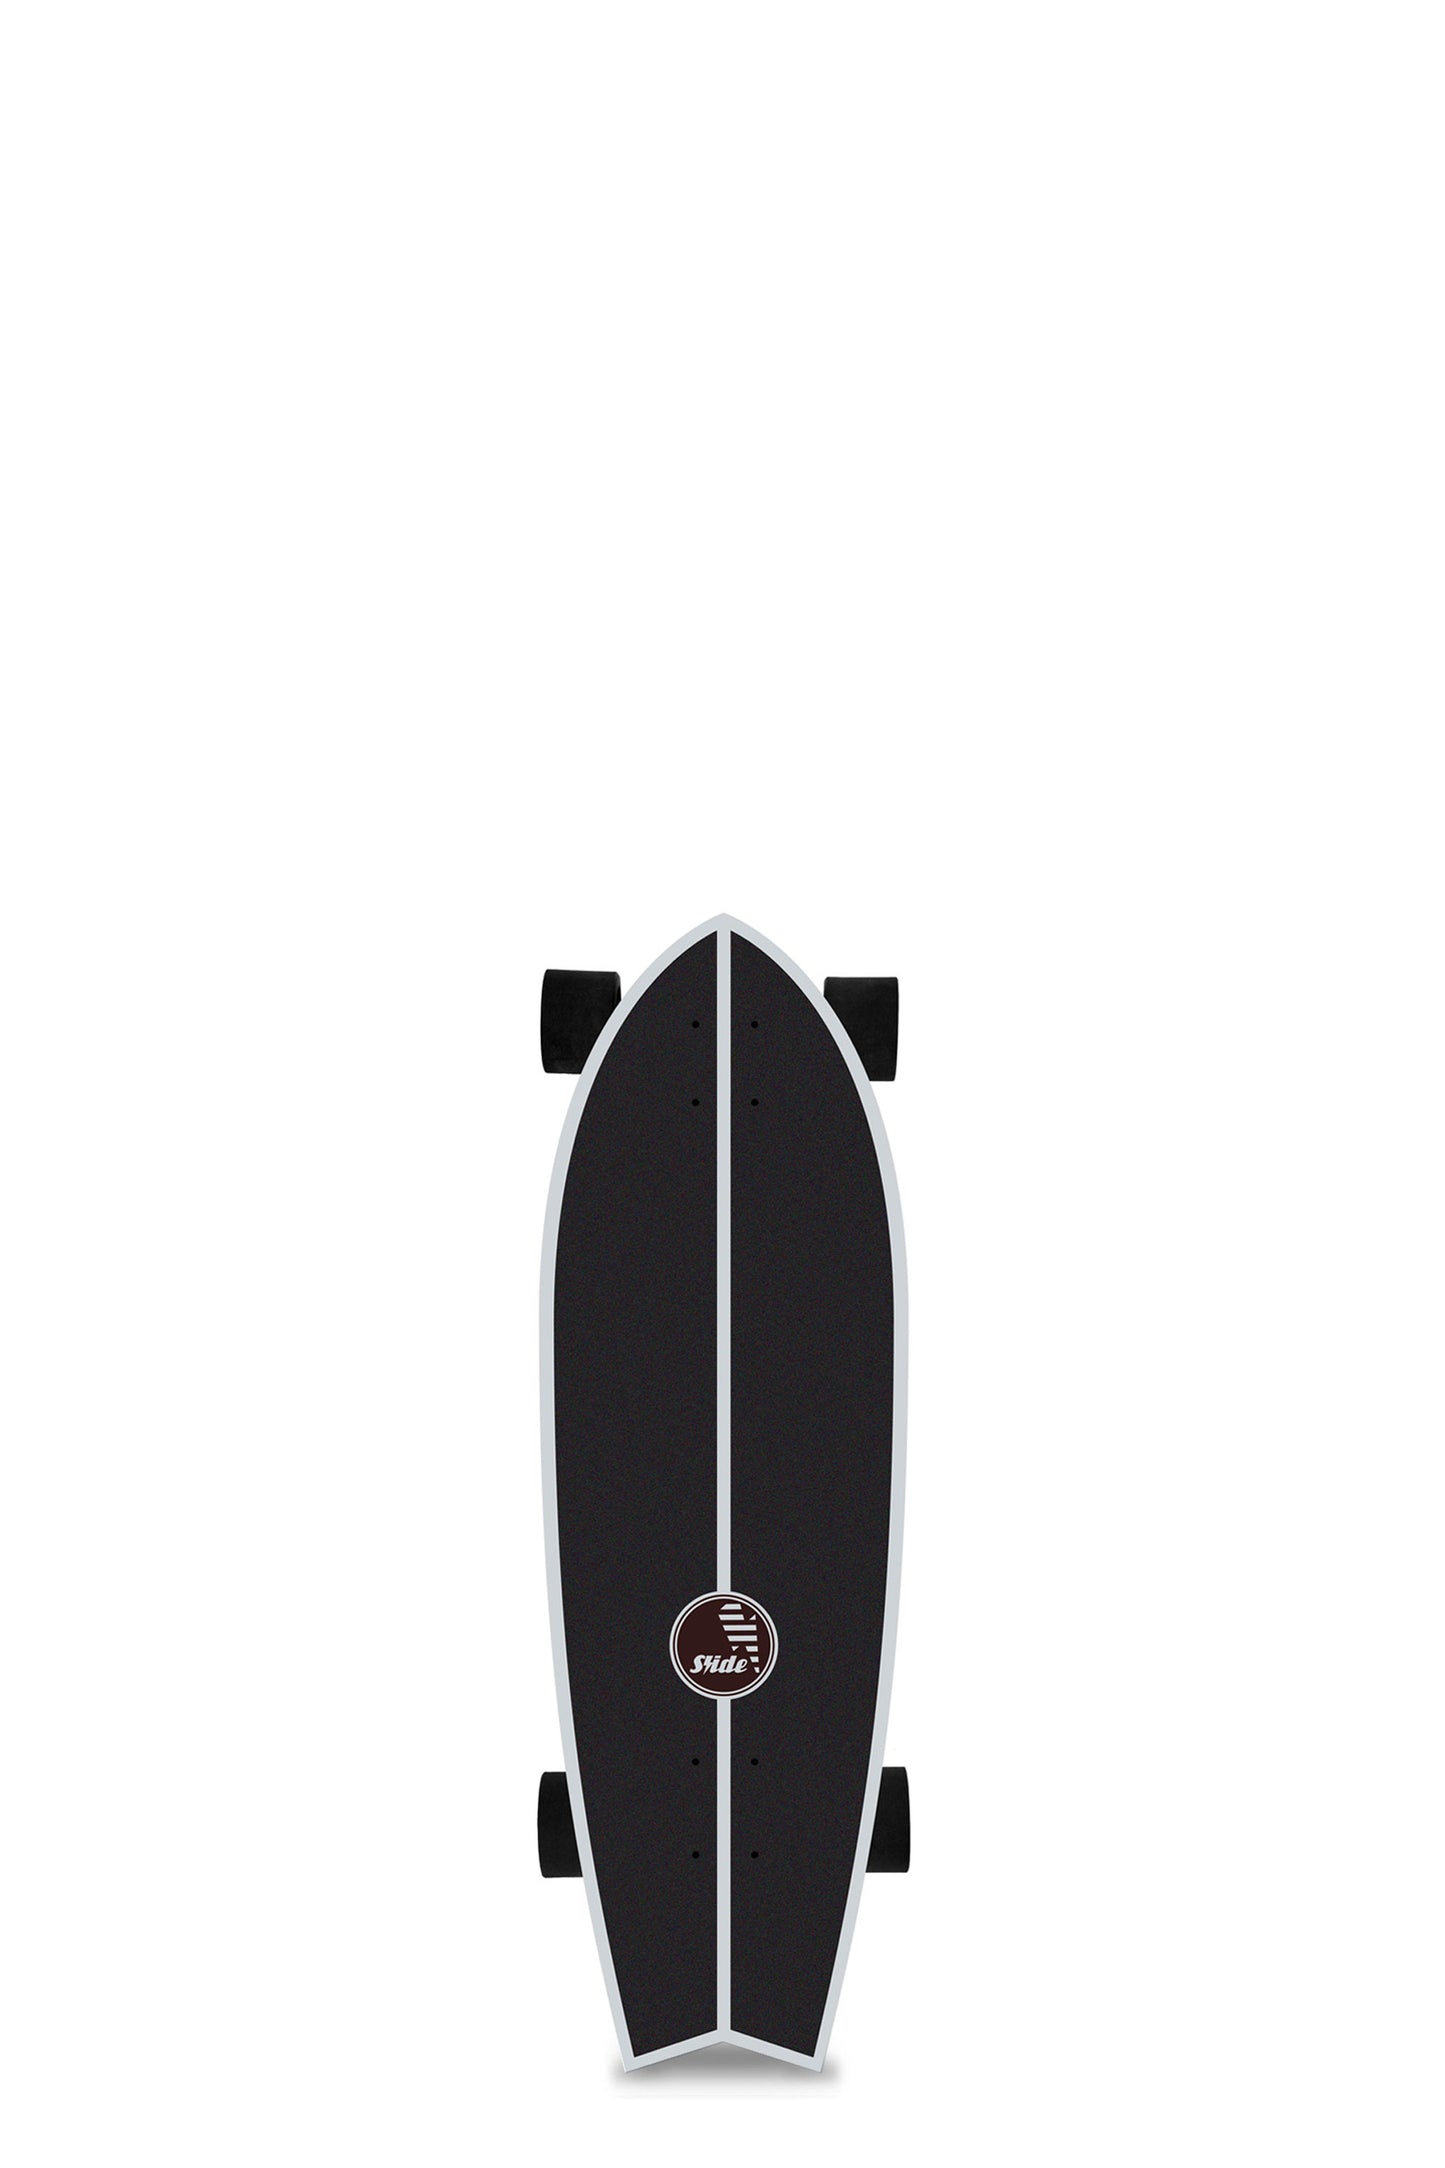 
                  
                    Pukas-Surf-Shop-slide-surfskates-Fish-32-thecch-tonic-70mm
                  
                